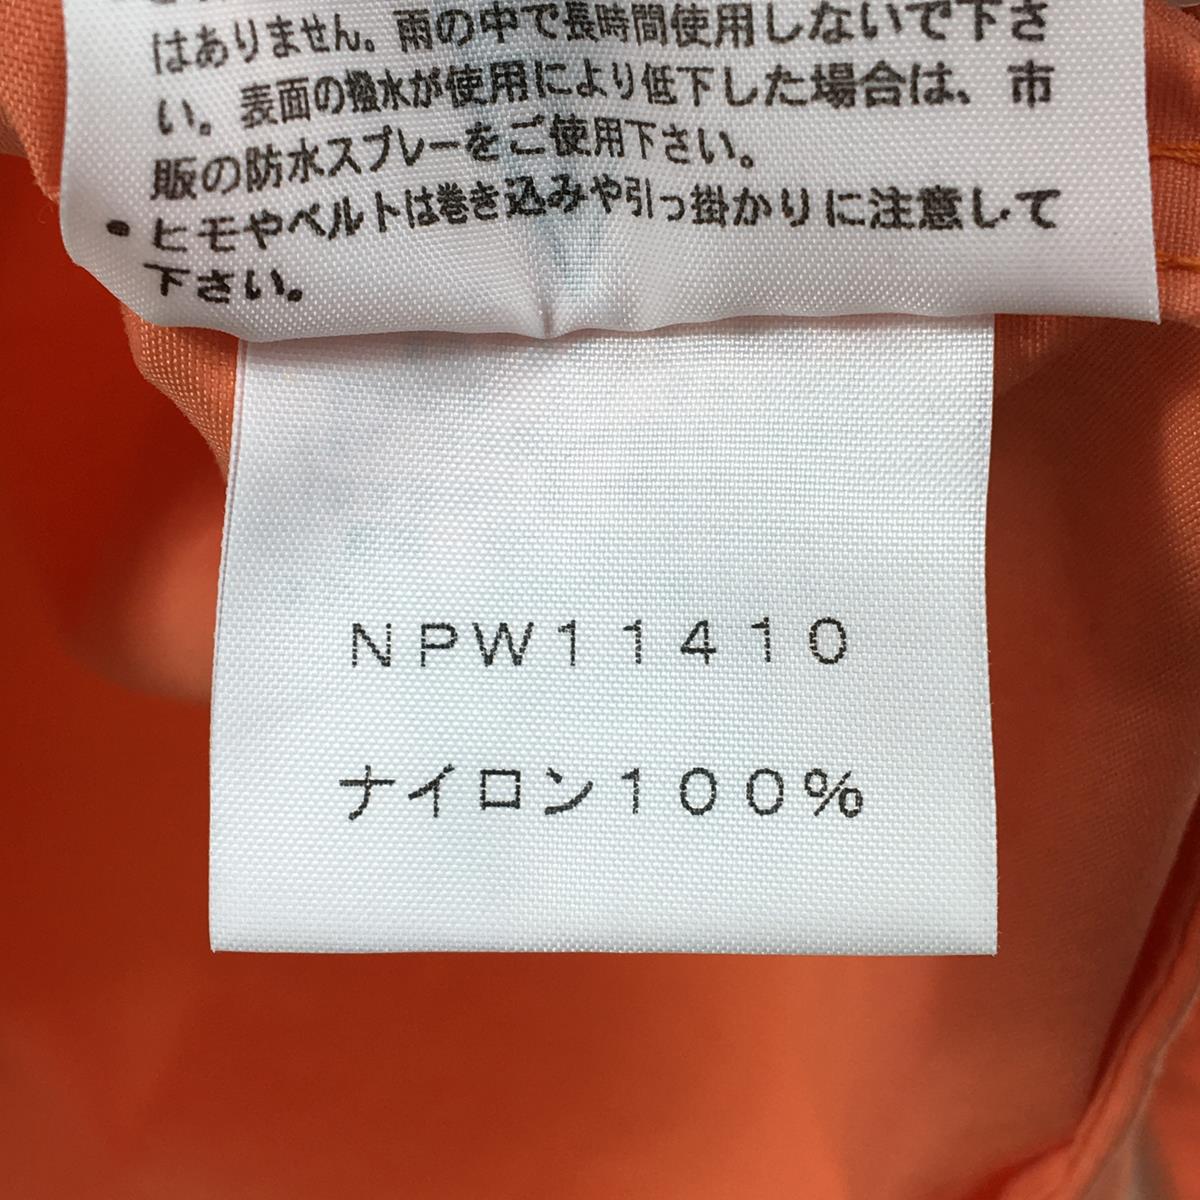 【WOMEN's L】 ノースフェイス コンパクト ジャケット Compact Jacket ウィンドシェル フーディ NORTH FACE NPW11410 オレンジ系